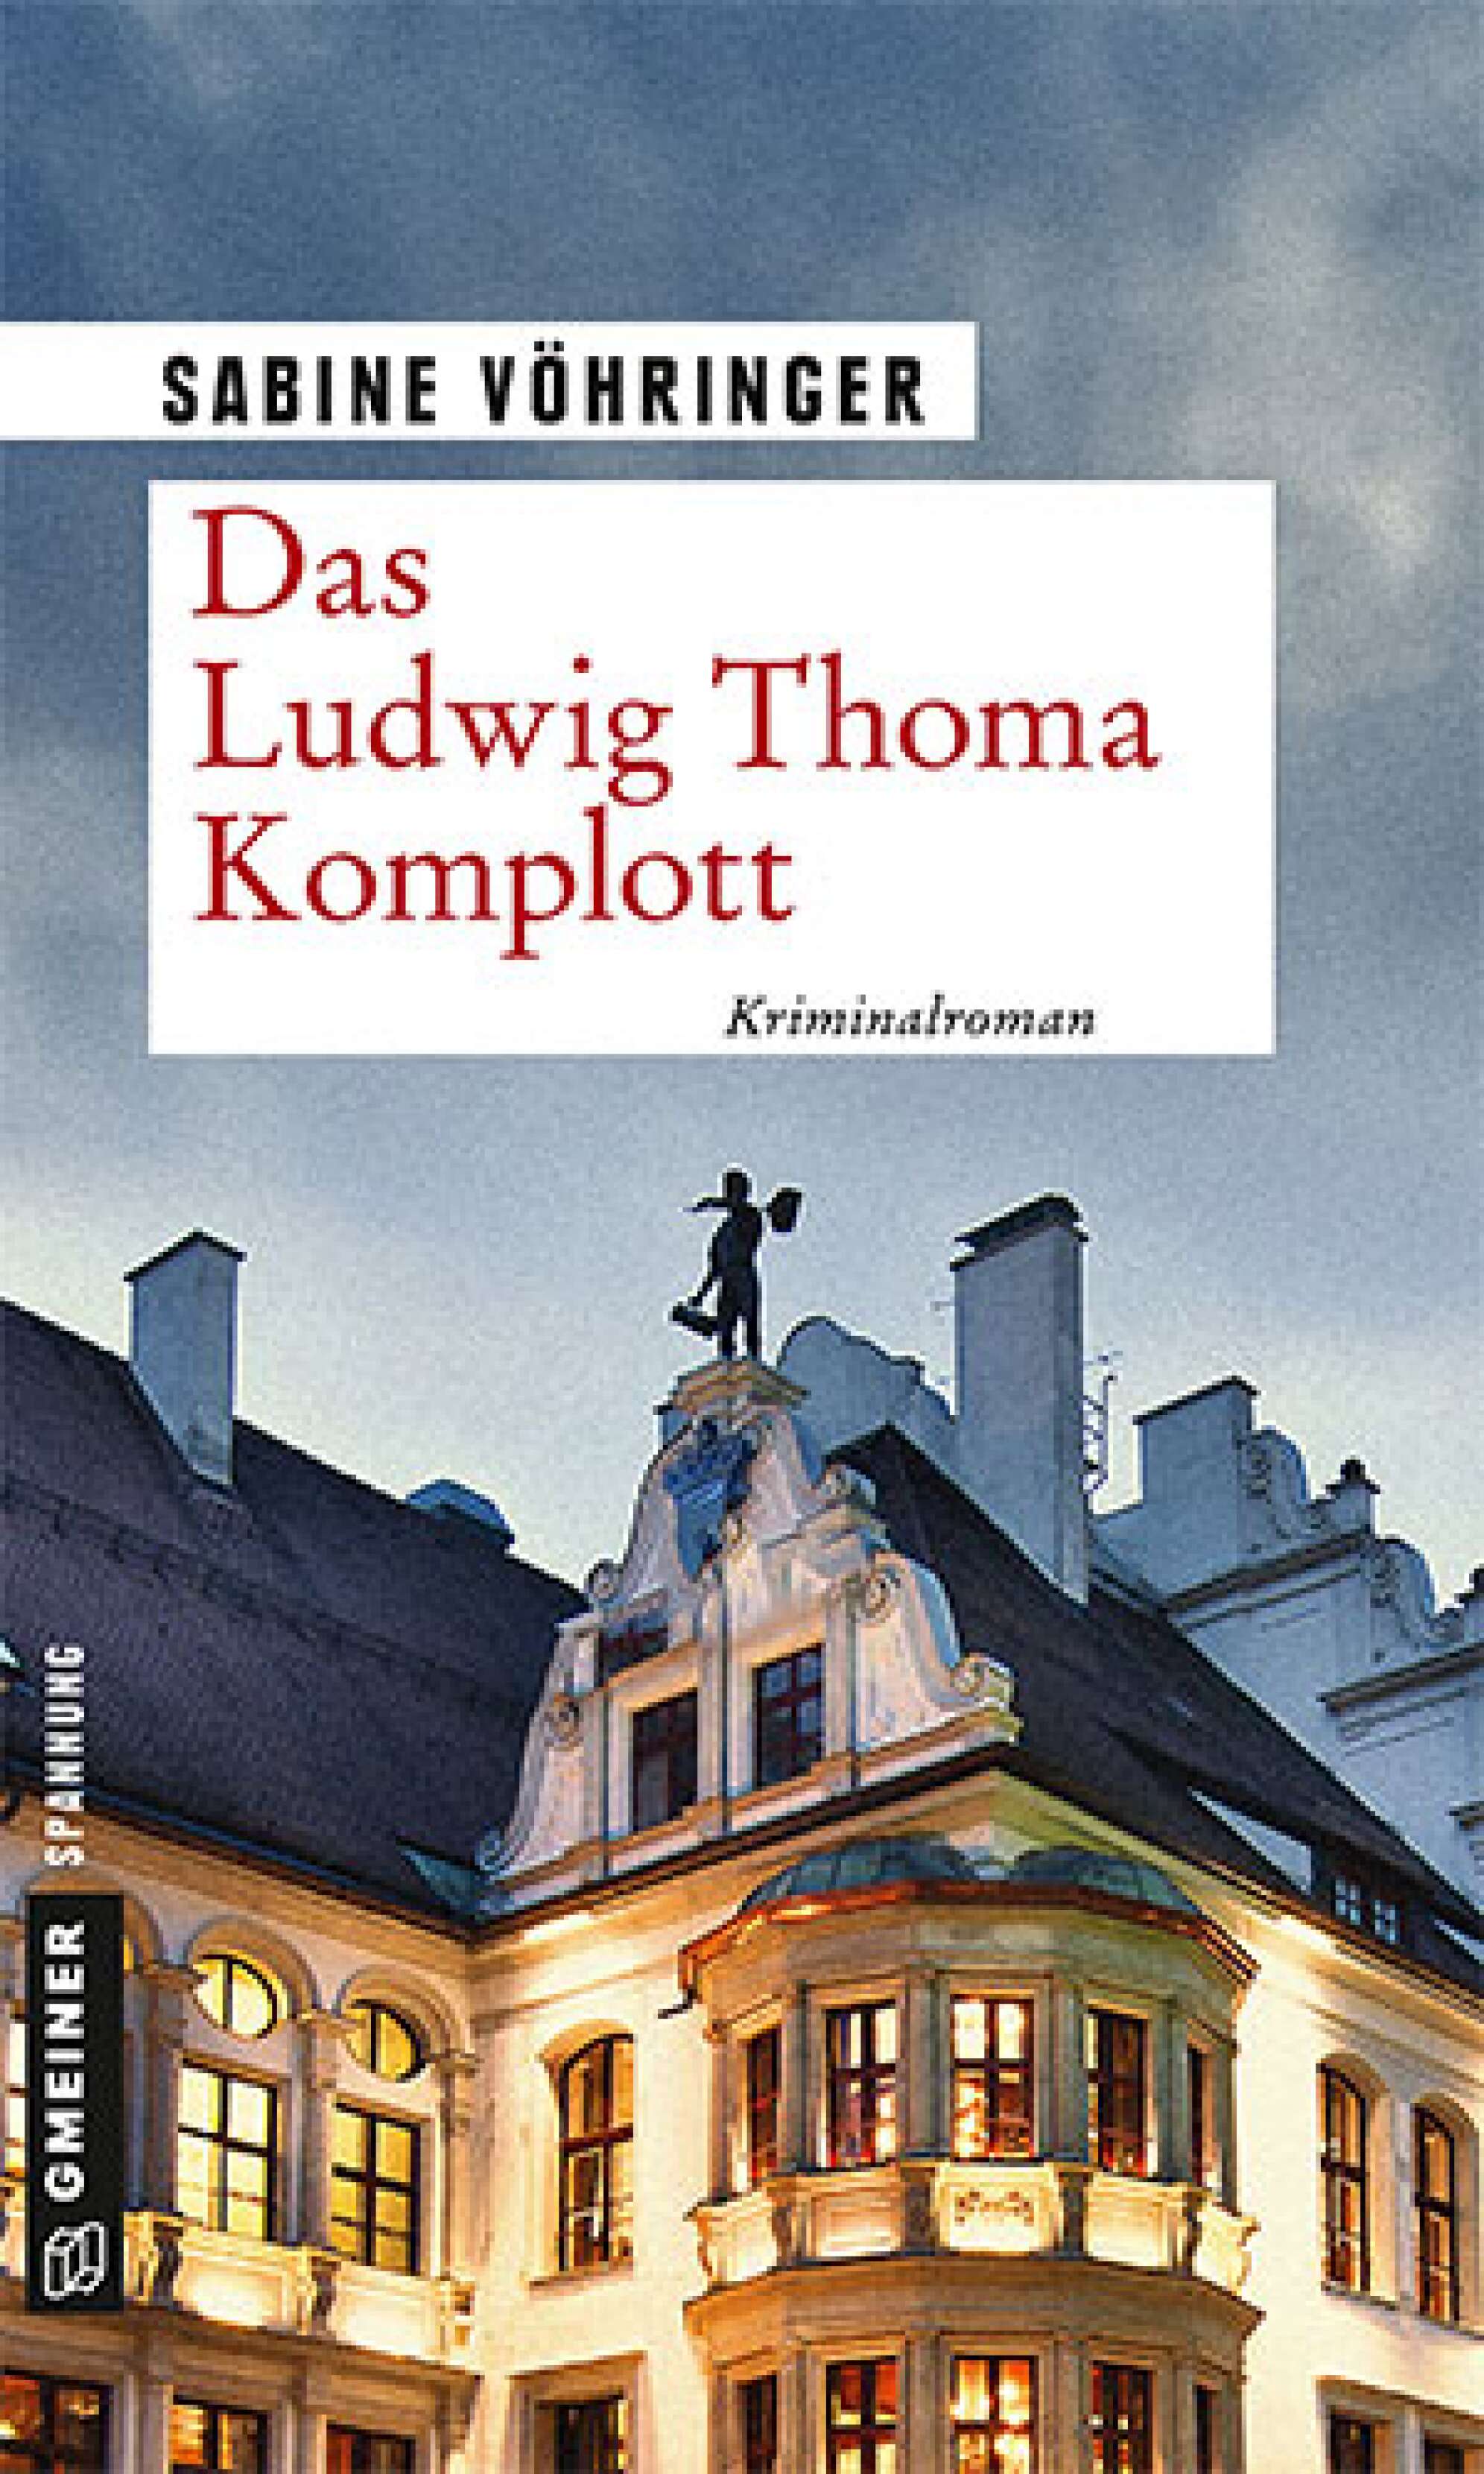 Das Buchcover des Kriminalromans "Das Ludwig Thoma Komplott" von Sabine Vöhringer